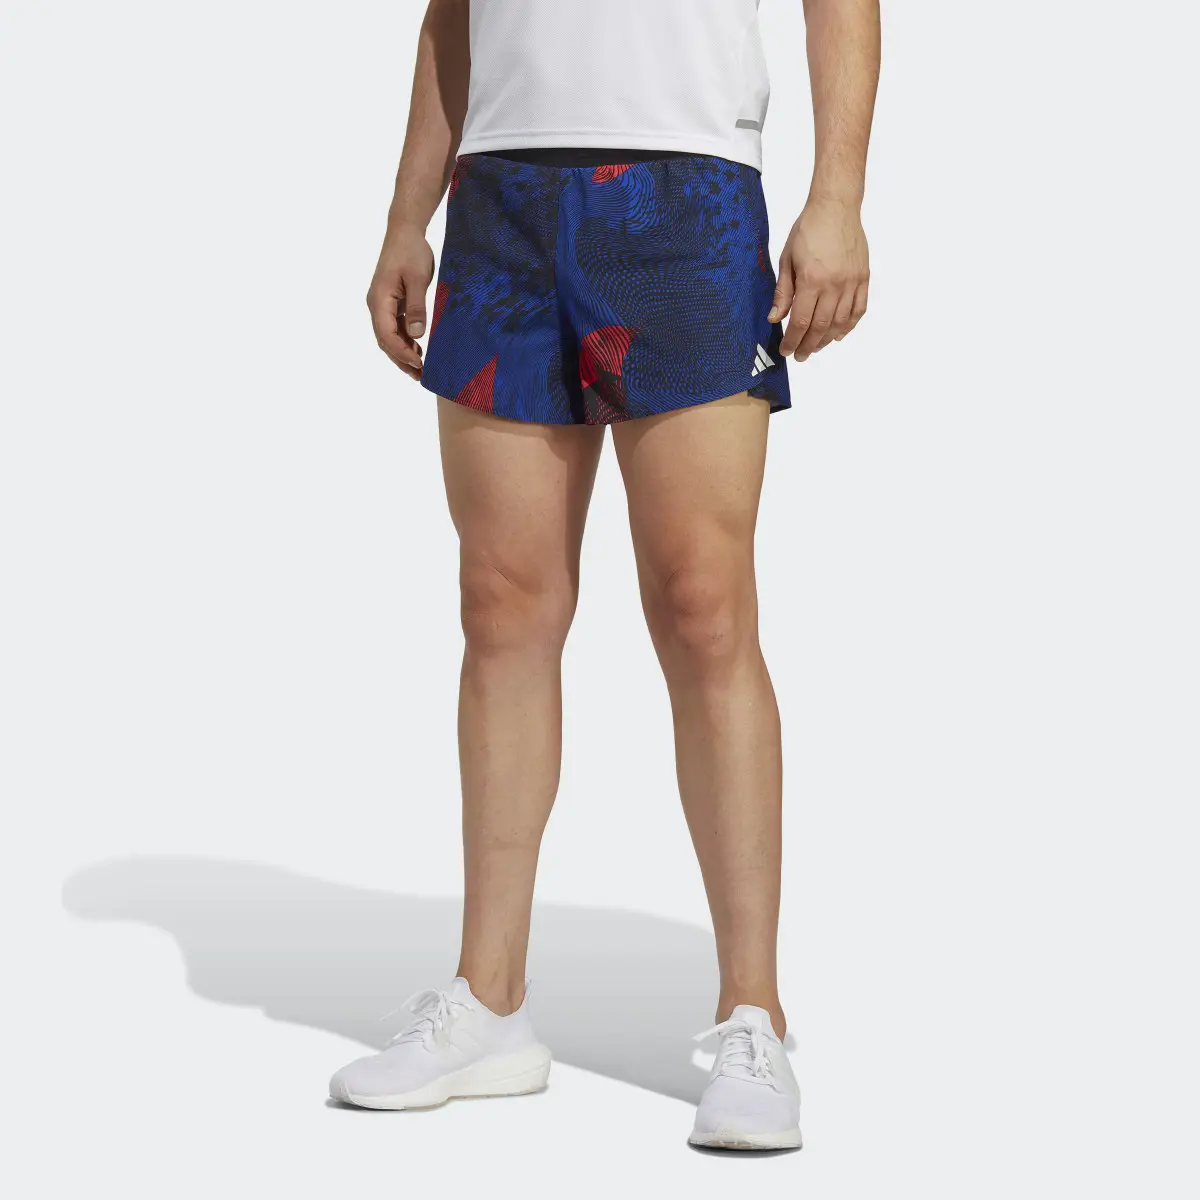 Adidas Adizero Split Shorts. 1